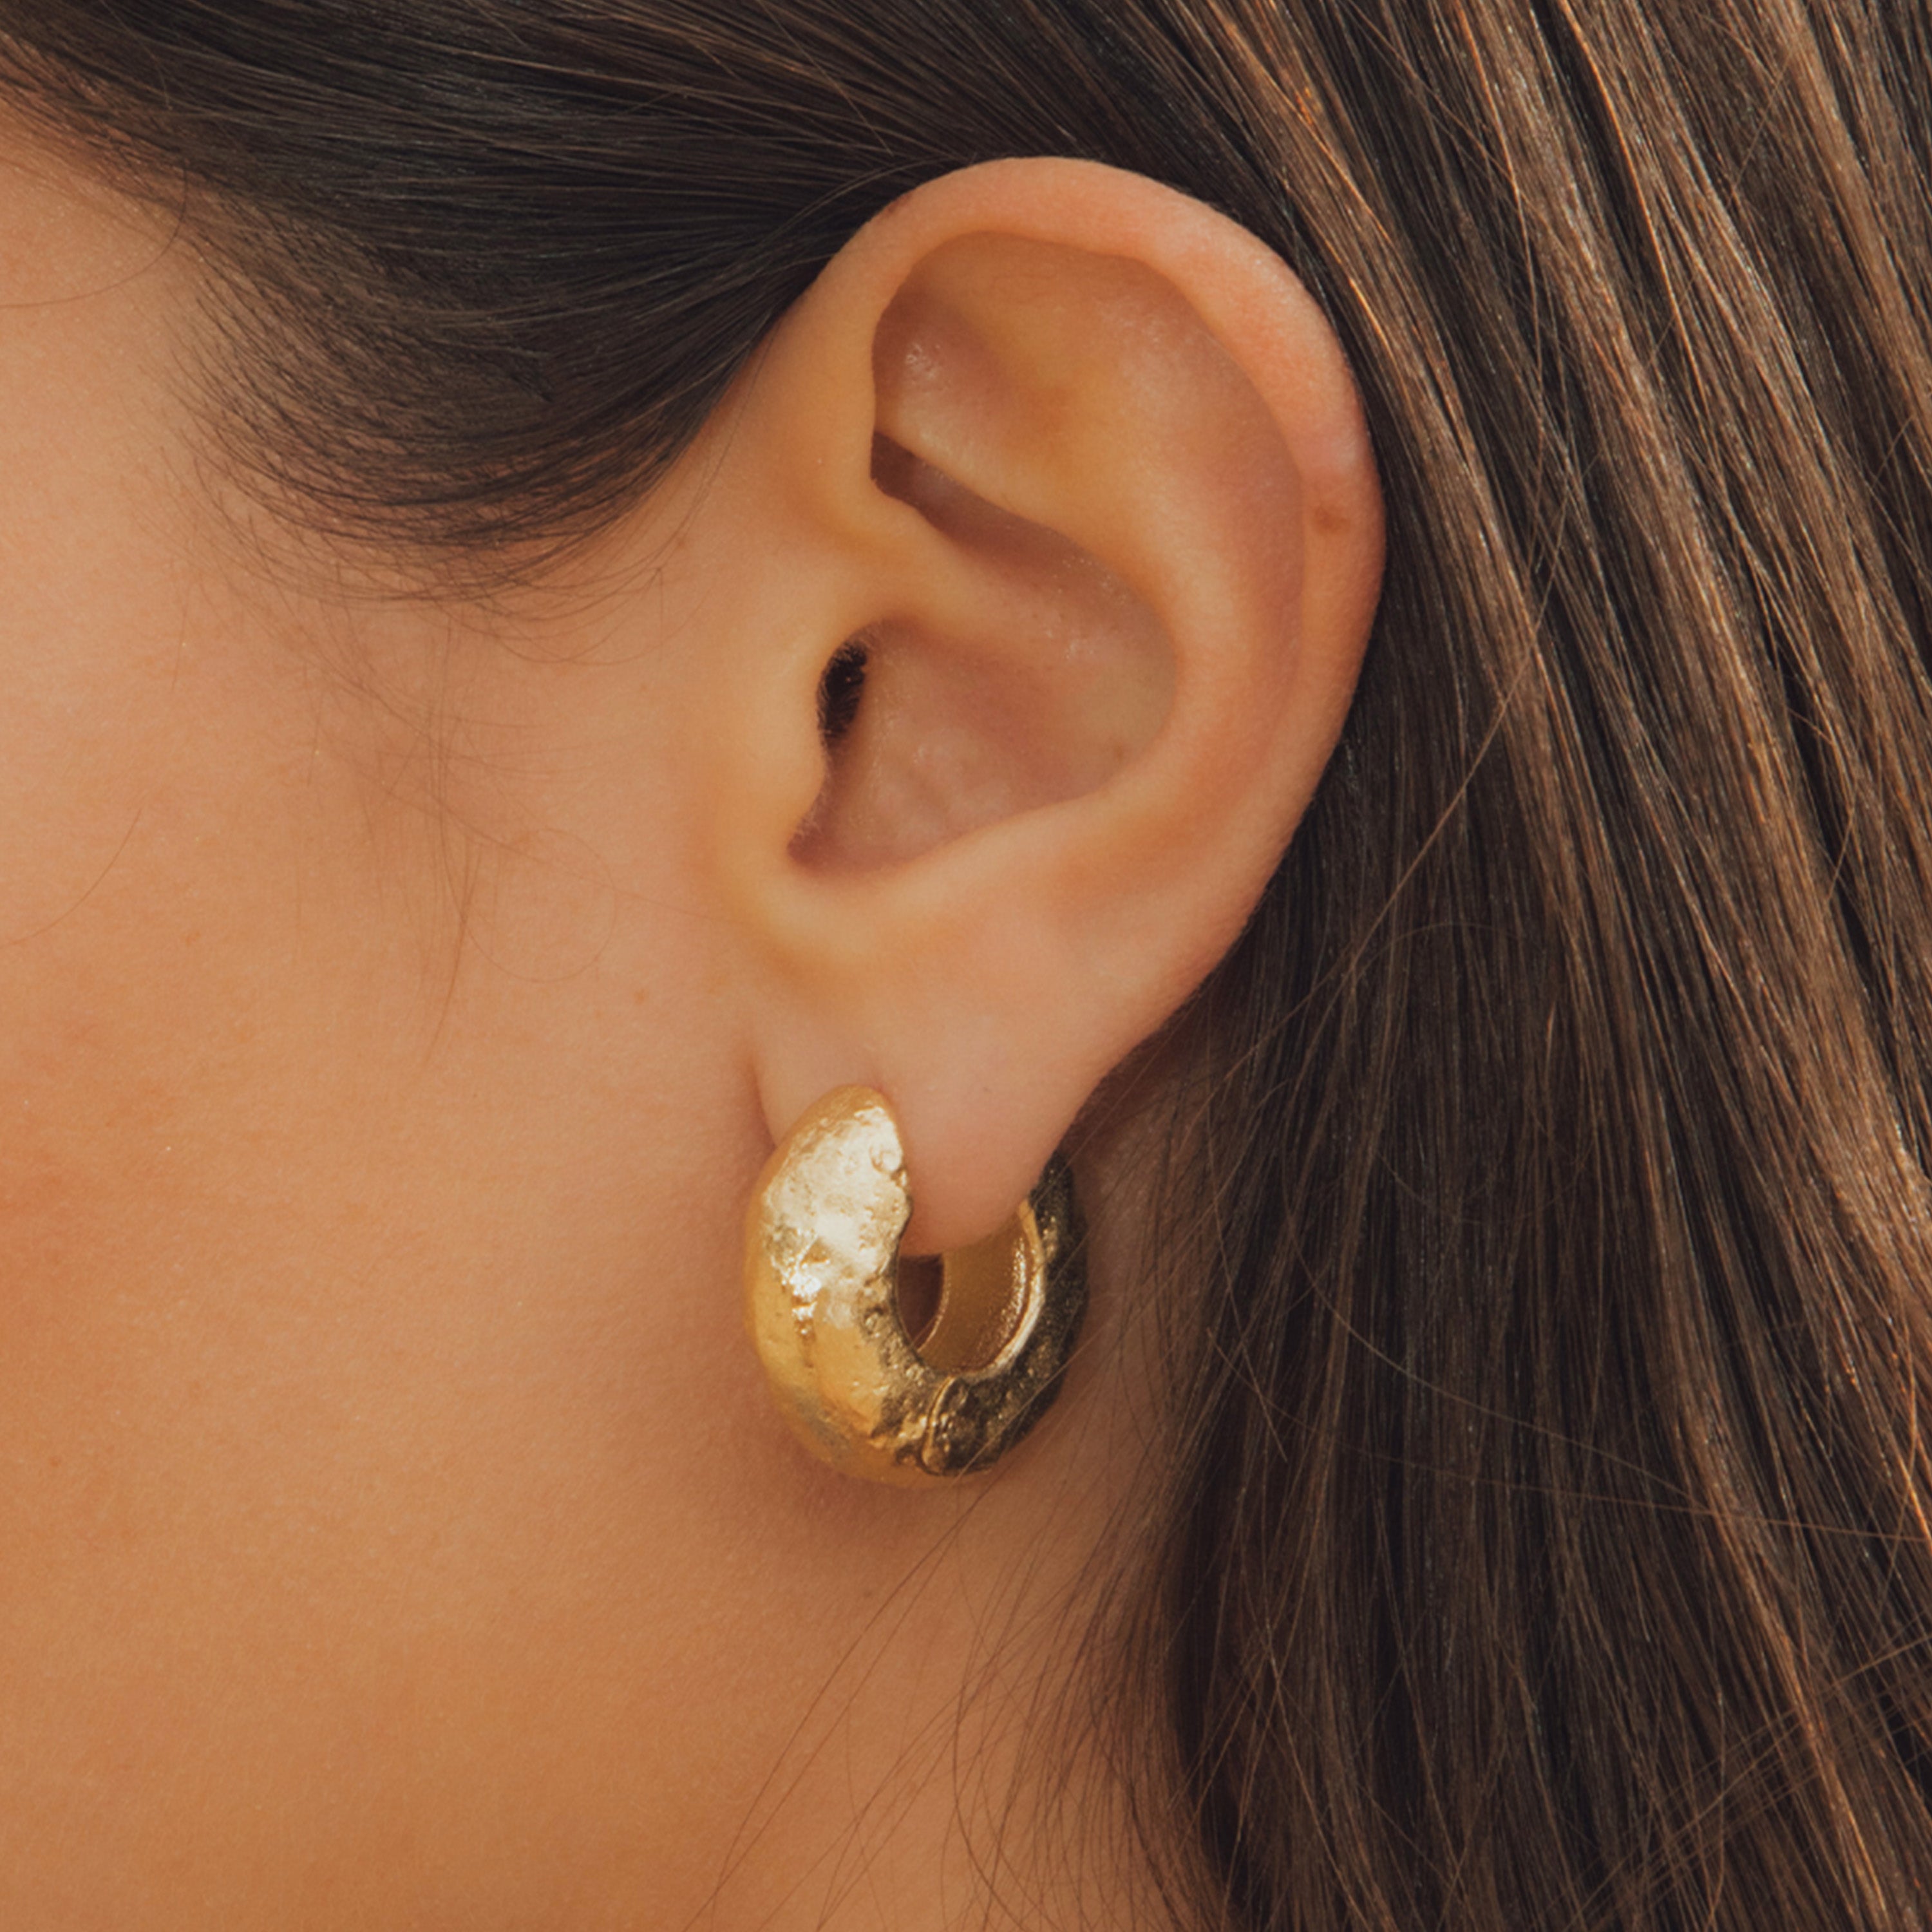 Anilla Earrings